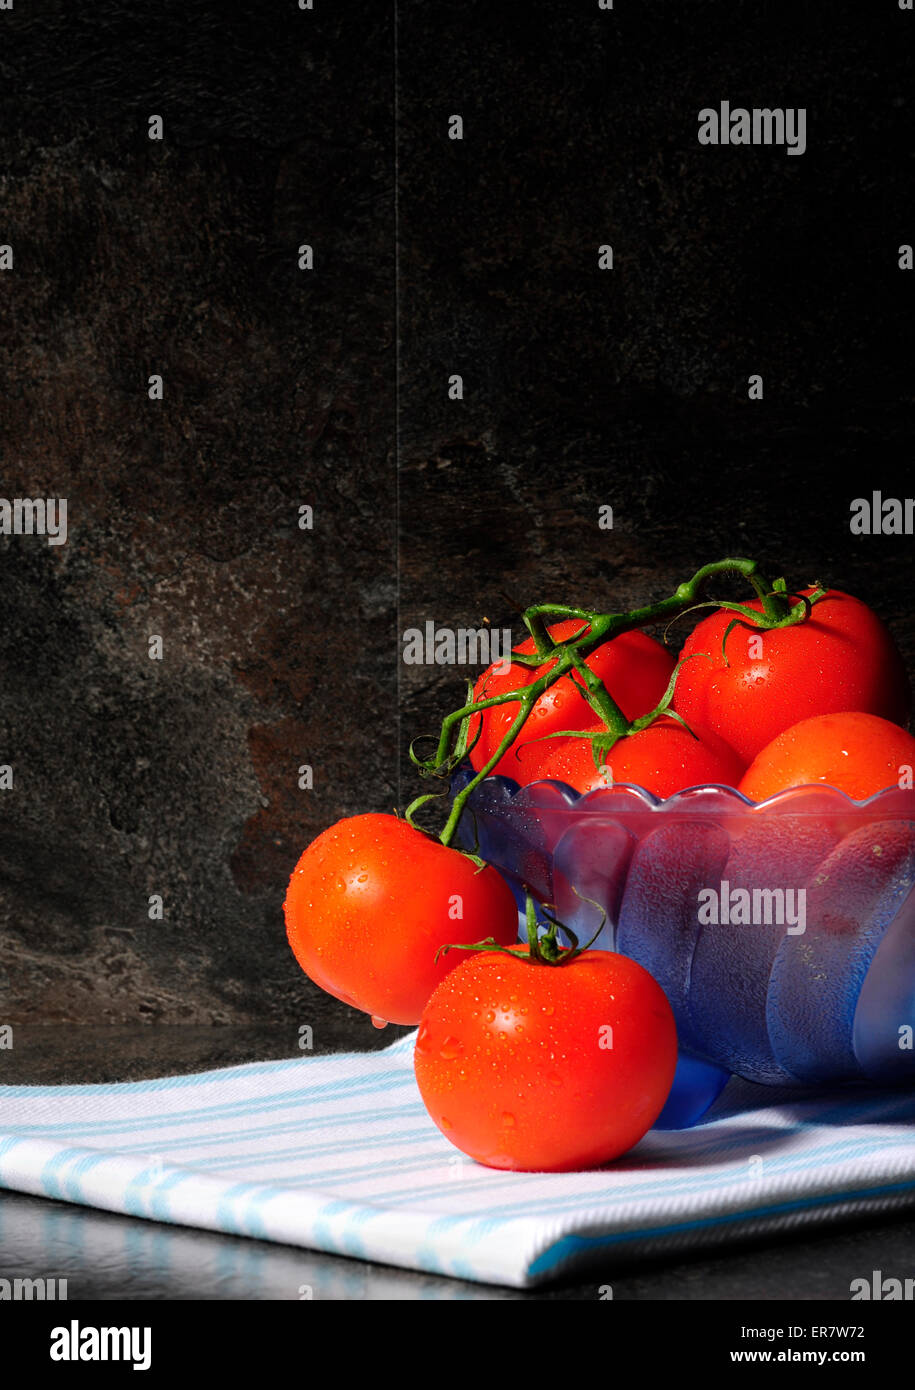 Ancora vita closeup di colore rosso brillante i pomodori in blu vintage bowl contro un drammatico nero ardesia impostazione di cucina Foto Stock